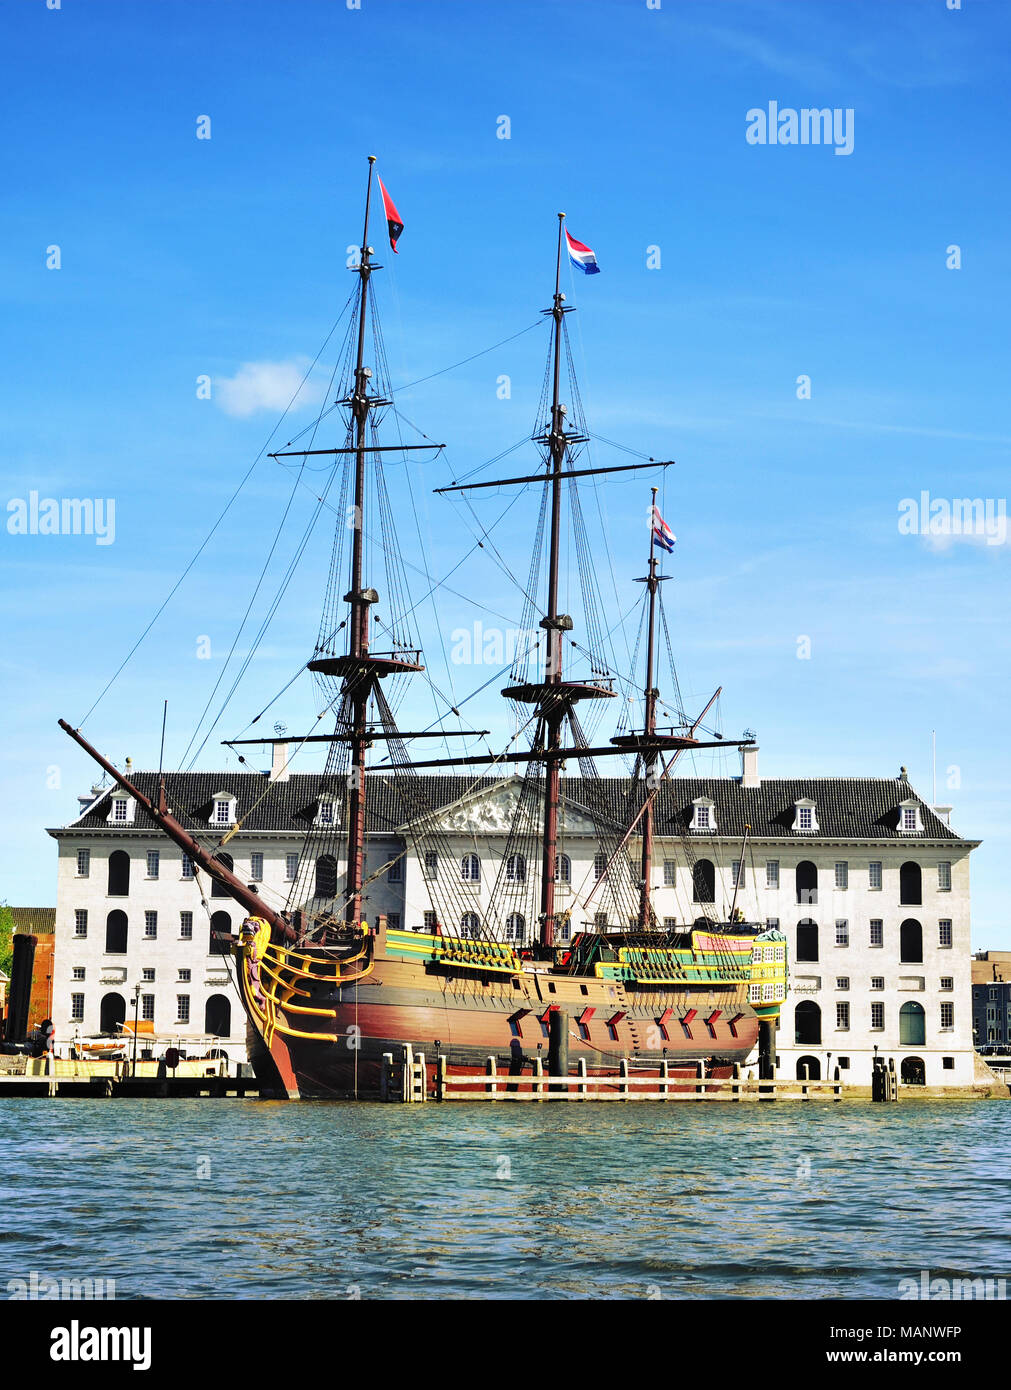 Piratenschiff oder Schiffs vor einem historischen Gebäude in Amsterdam. Sehenswürdigkeiten Attraktion, antiken Schiff. Stockfoto